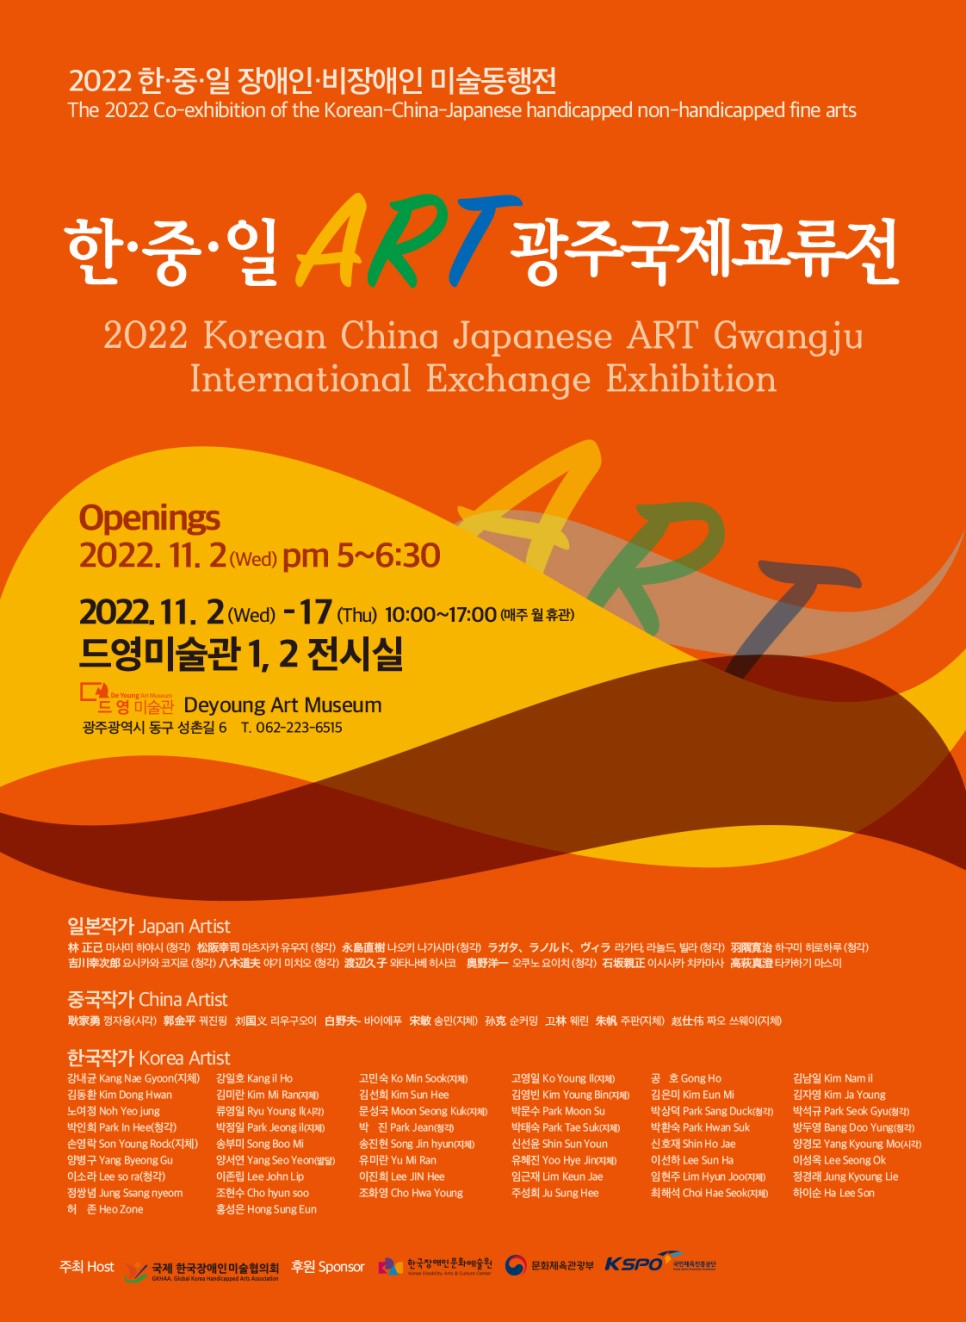 2022 한·중·일 장애인·비장애인 미술동행전 The 2022 Co-exhibition of the Korean-China-Japanese handicapped non-handicapped fine arts 한·중·일  광주국제교류전 2022 Korean China Japanese ART Gwangju International Exchange Exhibition Openings 2022. 11. 2(Wed) pm 5~6:30 2022.11. 2 (Wed) - 17 (Thu) 10:00~17:00 매주 월 휴관) 드영미술관 1, 2 전시실 De Young 드 영 미술관 Deyoung Art Museum 광주광역시 동구 성촌길 6 T. 062-223-6515 일본작가 Japan Artist 林 正 마사미 하야시 (청각) ) 마츠자카 유우지 (청각) S 케 요시카와 코지로 (청각) 야기 미치오 (청각) 나오키 나가시마 (청각) 구 와타나베 히사코 , 라가타 라드 빌라 (청각) 하구미 히로하루 (청각) - 오쿠노 요이치 (청각) 正 이사카 치카마사 AS 타카하기 마스미 중국작가 China Artist 家 껑자용(시각) 金 꿔진핑 치는 리우구오이 夫 바이에푸 송민 (지체) 호 순커밍 꼬林 린 - 주판(지체) 짜오 쓰웨이(지체)  한국작가 Korea Artist 강내균 Kang Nae Gyoon(지체) 강일호 Kangil Ho 김동환 Kim Dong Hwan 김미란 Kim M Ran지제) 노여정 Noh Yeojung 류영일 Ryu Young K(시각) 박인희 Park in Hee(청각) | 박정일 Park Jeong |  손영락 Son Young Rodk(지체) 송부미 Song Boo M 양병구 Yang Byeong Gu 양서연 Yang Seo Yeon(발달) 이소라 Lee so ra (청각) 이존립 Lee John Lip 정쌍념 Jung Ssang nyeom 조현수 Cho hyun soo 81 Heo Zone 홍성은 Hong Sung Eun 고민숙 Ko Min Sook 지체) 김선희 Kim Sun Hee 문성국 Moon Seong Kuk(지체) 송진현 Song in hyun 유미란 Yu M Ran 이진희 Lee JIN Hee 조화영 Cho Hwa Young 고영일 Ko Young | 김영빈 Kim Young Bin(지체) 박문수 Park Moon Su 박태숙 Park Tae Sukt (지체) 신선윤 Shin Sun Youn 유혜진 Yoo Hye Jin 임근재 Lim Keun Jae 주성희 Ju Sung Hee 공 호 Gong Ho 김은미 Kim Eun M 박상덕 Park Sang Duck(청각) 박환숙 Park Hwan Suk 신호재 Shin Ho Jae 0416 Lee Sun Ha 임현주 Lim Hyun Joo(지체) 최해석 Chai Hae Seok ) 김남일 Kim Namil 김자영 Kim Ja Young 박석규 Park Seok Gyu 방두영 Bang Doo Yung (청각) 양경모 Yang Kyoung Mo(시각) 이성옥 Lee Seong Ok 정경래 Jung Kyoung Lie 하이순 Ha Lee Son 주최 HOST / 국제 한국장애인미술협의회  후원 한국장애인문화예술원, 문화체육관광부, 국민체육진흥공단